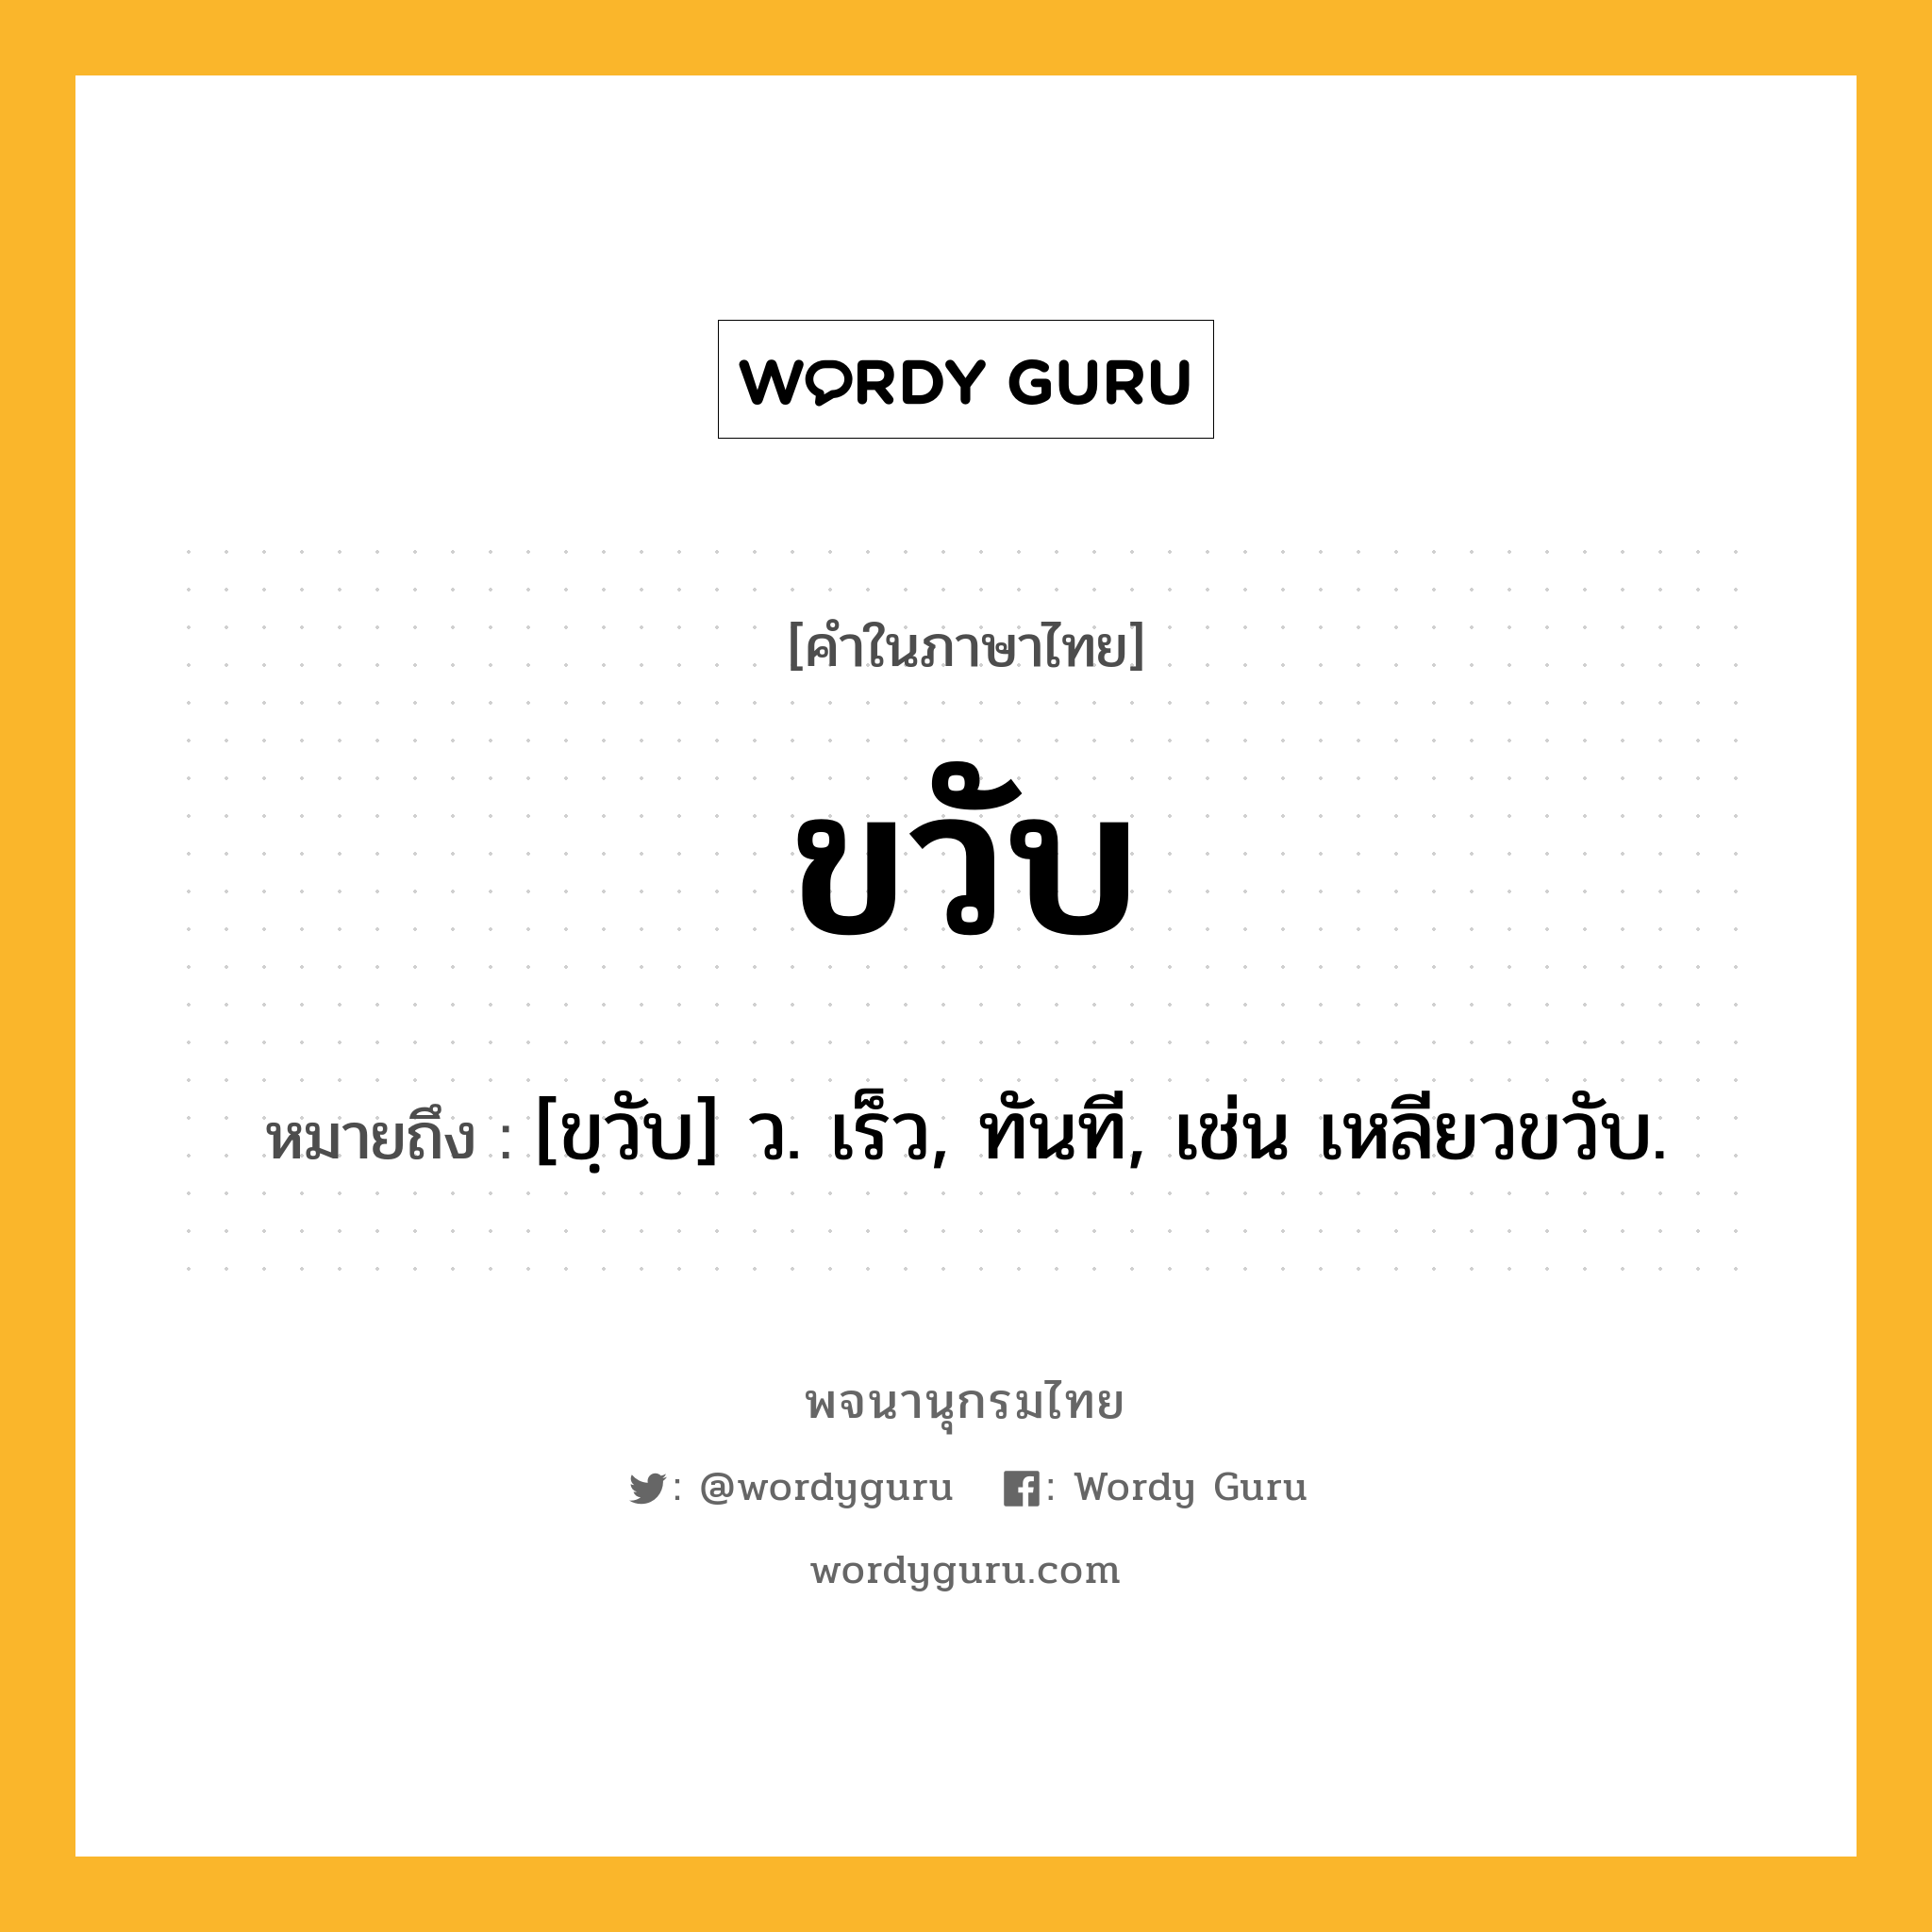 ขวับ ความหมาย หมายถึงอะไร?, คำในภาษาไทย ขวับ หมายถึง [ขฺวับ] ว. เร็ว, ทันที, เช่น เหลียวขวับ.